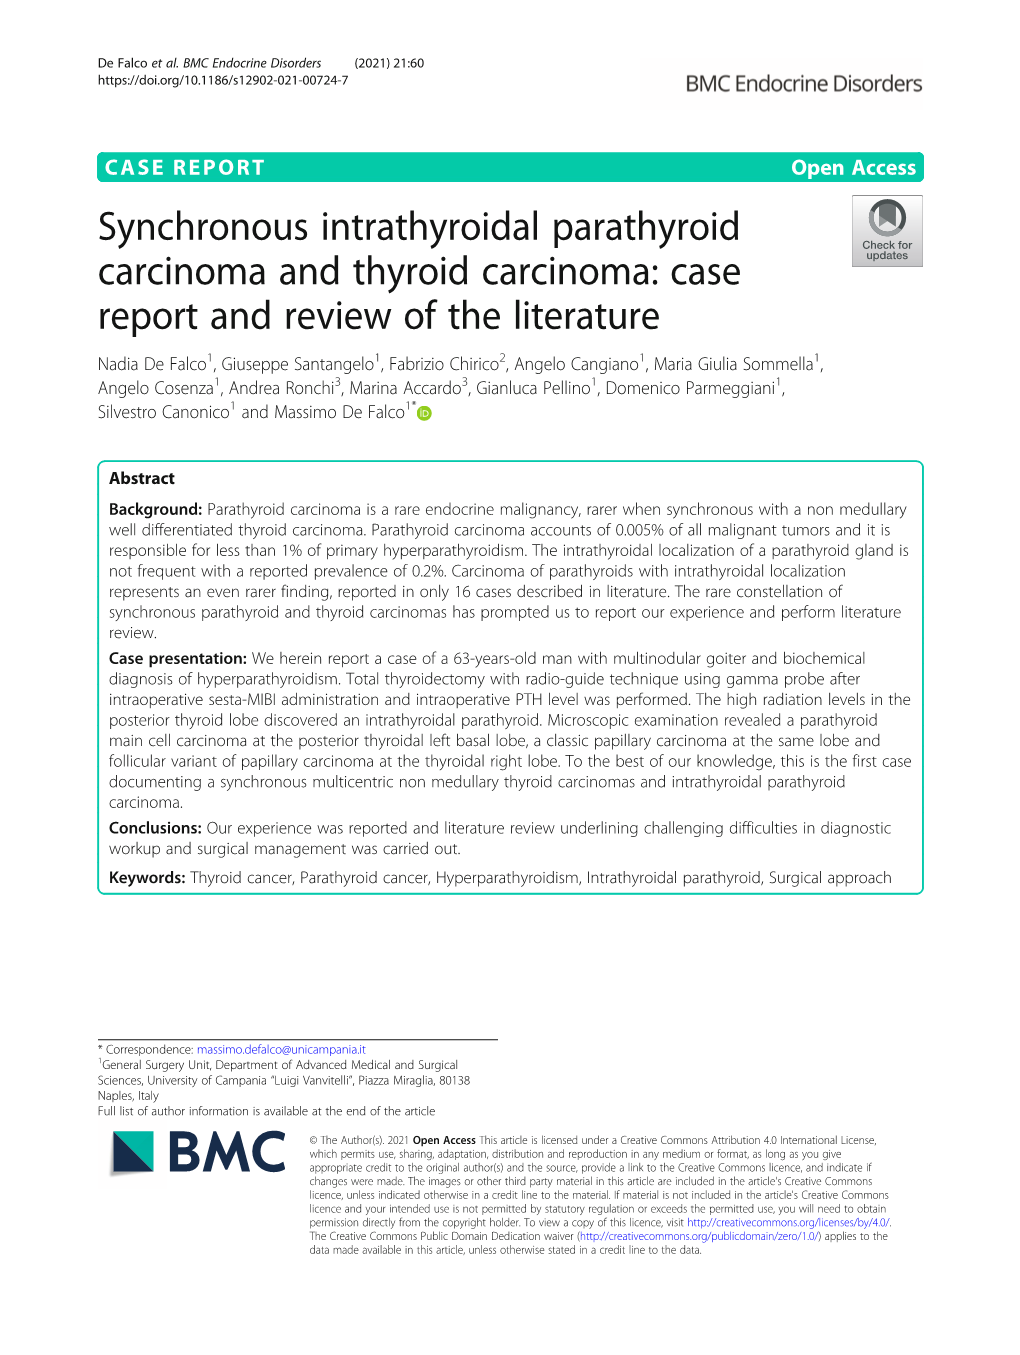 Synchronous Intrathyroidal Parathyroid Carcinoma and Thyroid